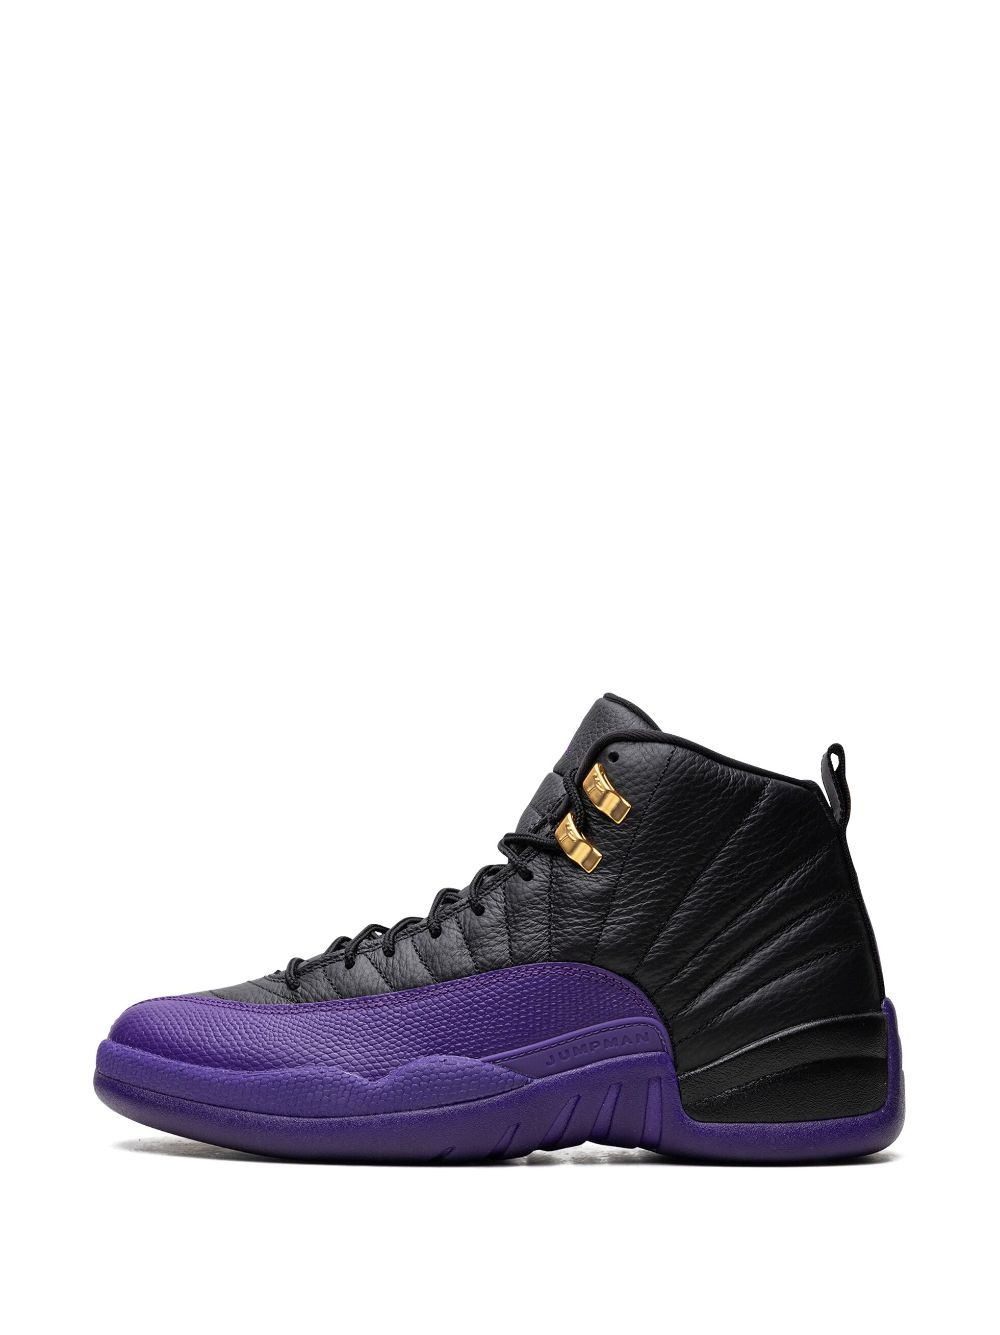 Air Jordan 12 "Field Purple" sneakers - 5